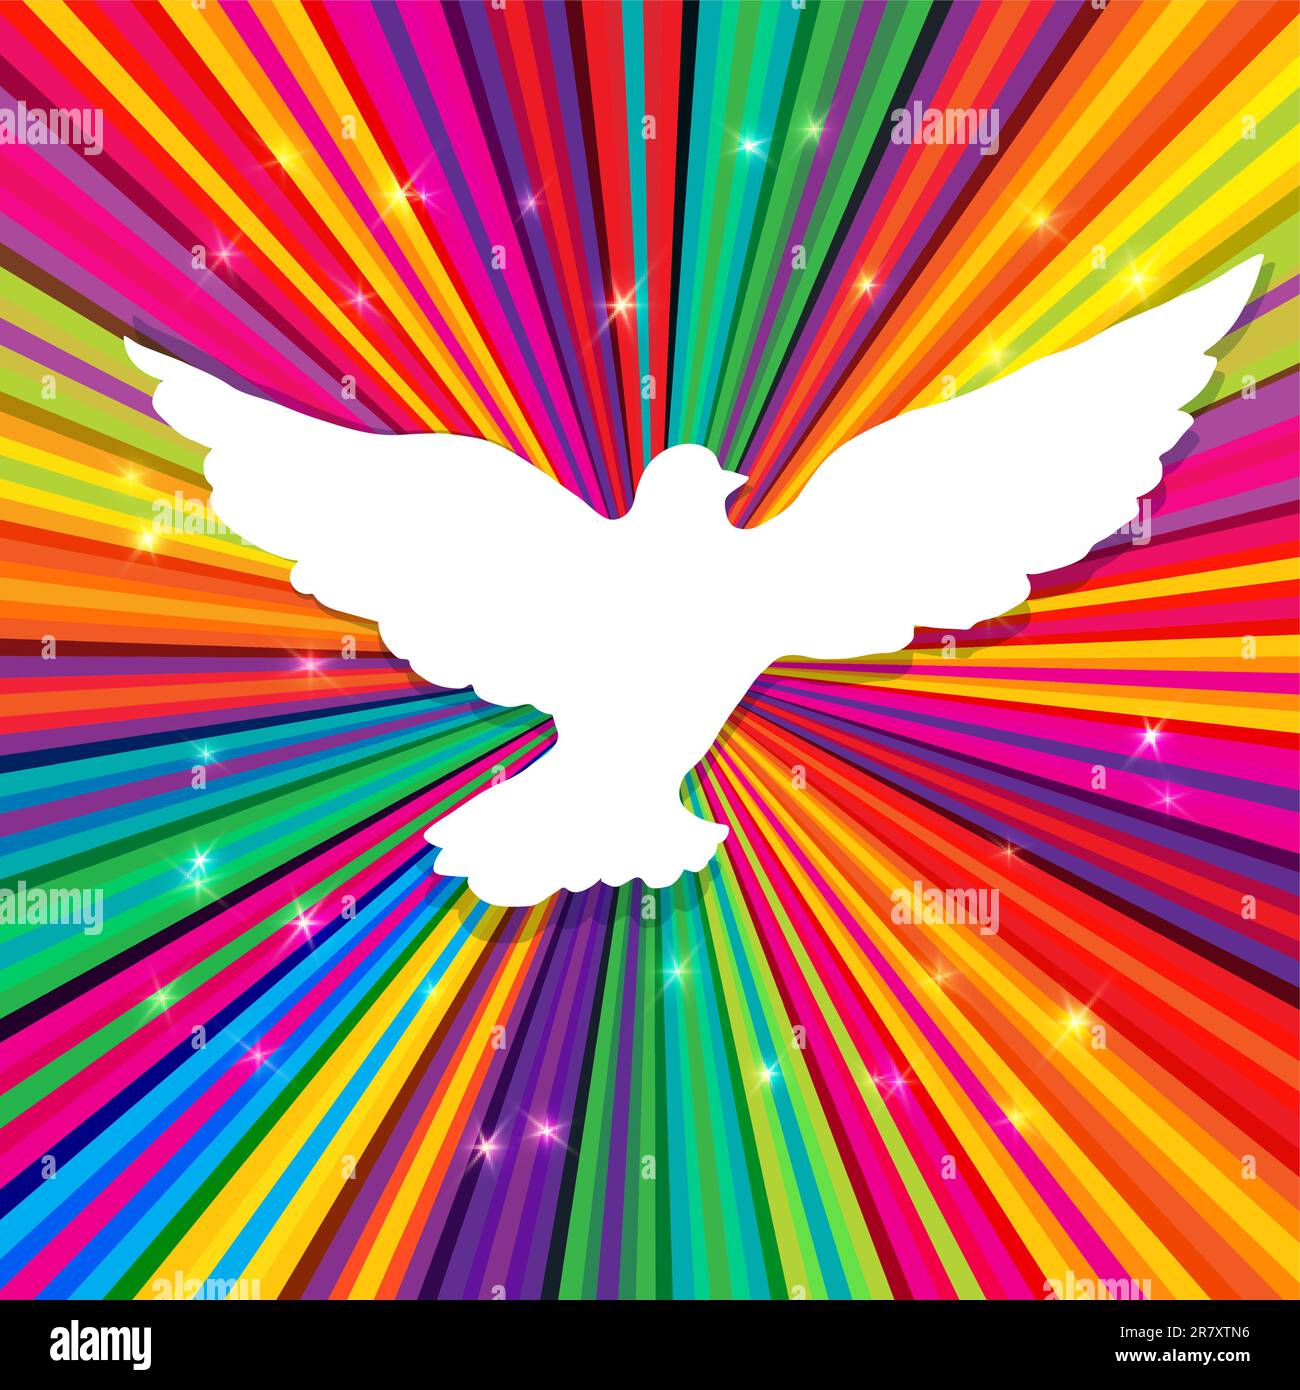 Die Taube Silhouette auf psychedelische farbigen abstrakten Hintergrund. Vektor, EPS10 Stock Vektor